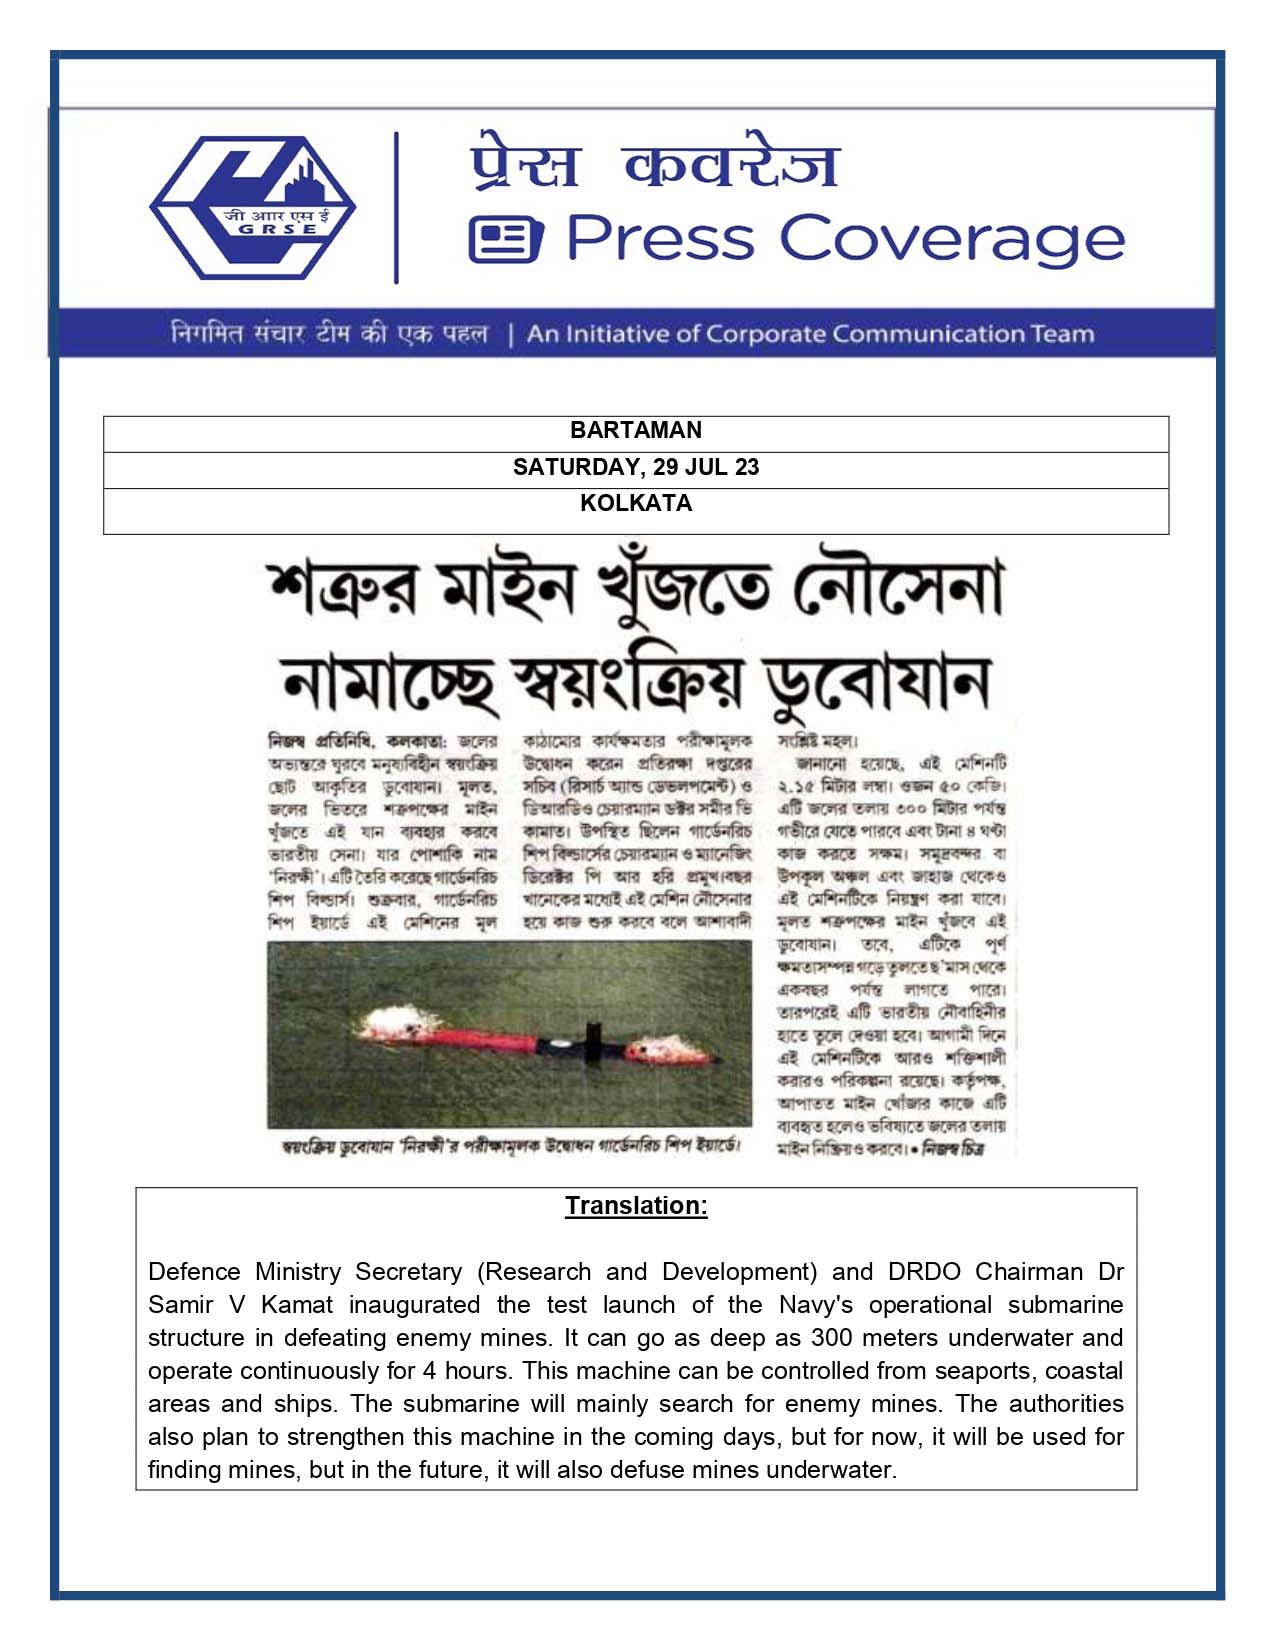 Press Coverage : Bartman, 29 Jul 23 : Mine Detector AUV Launched